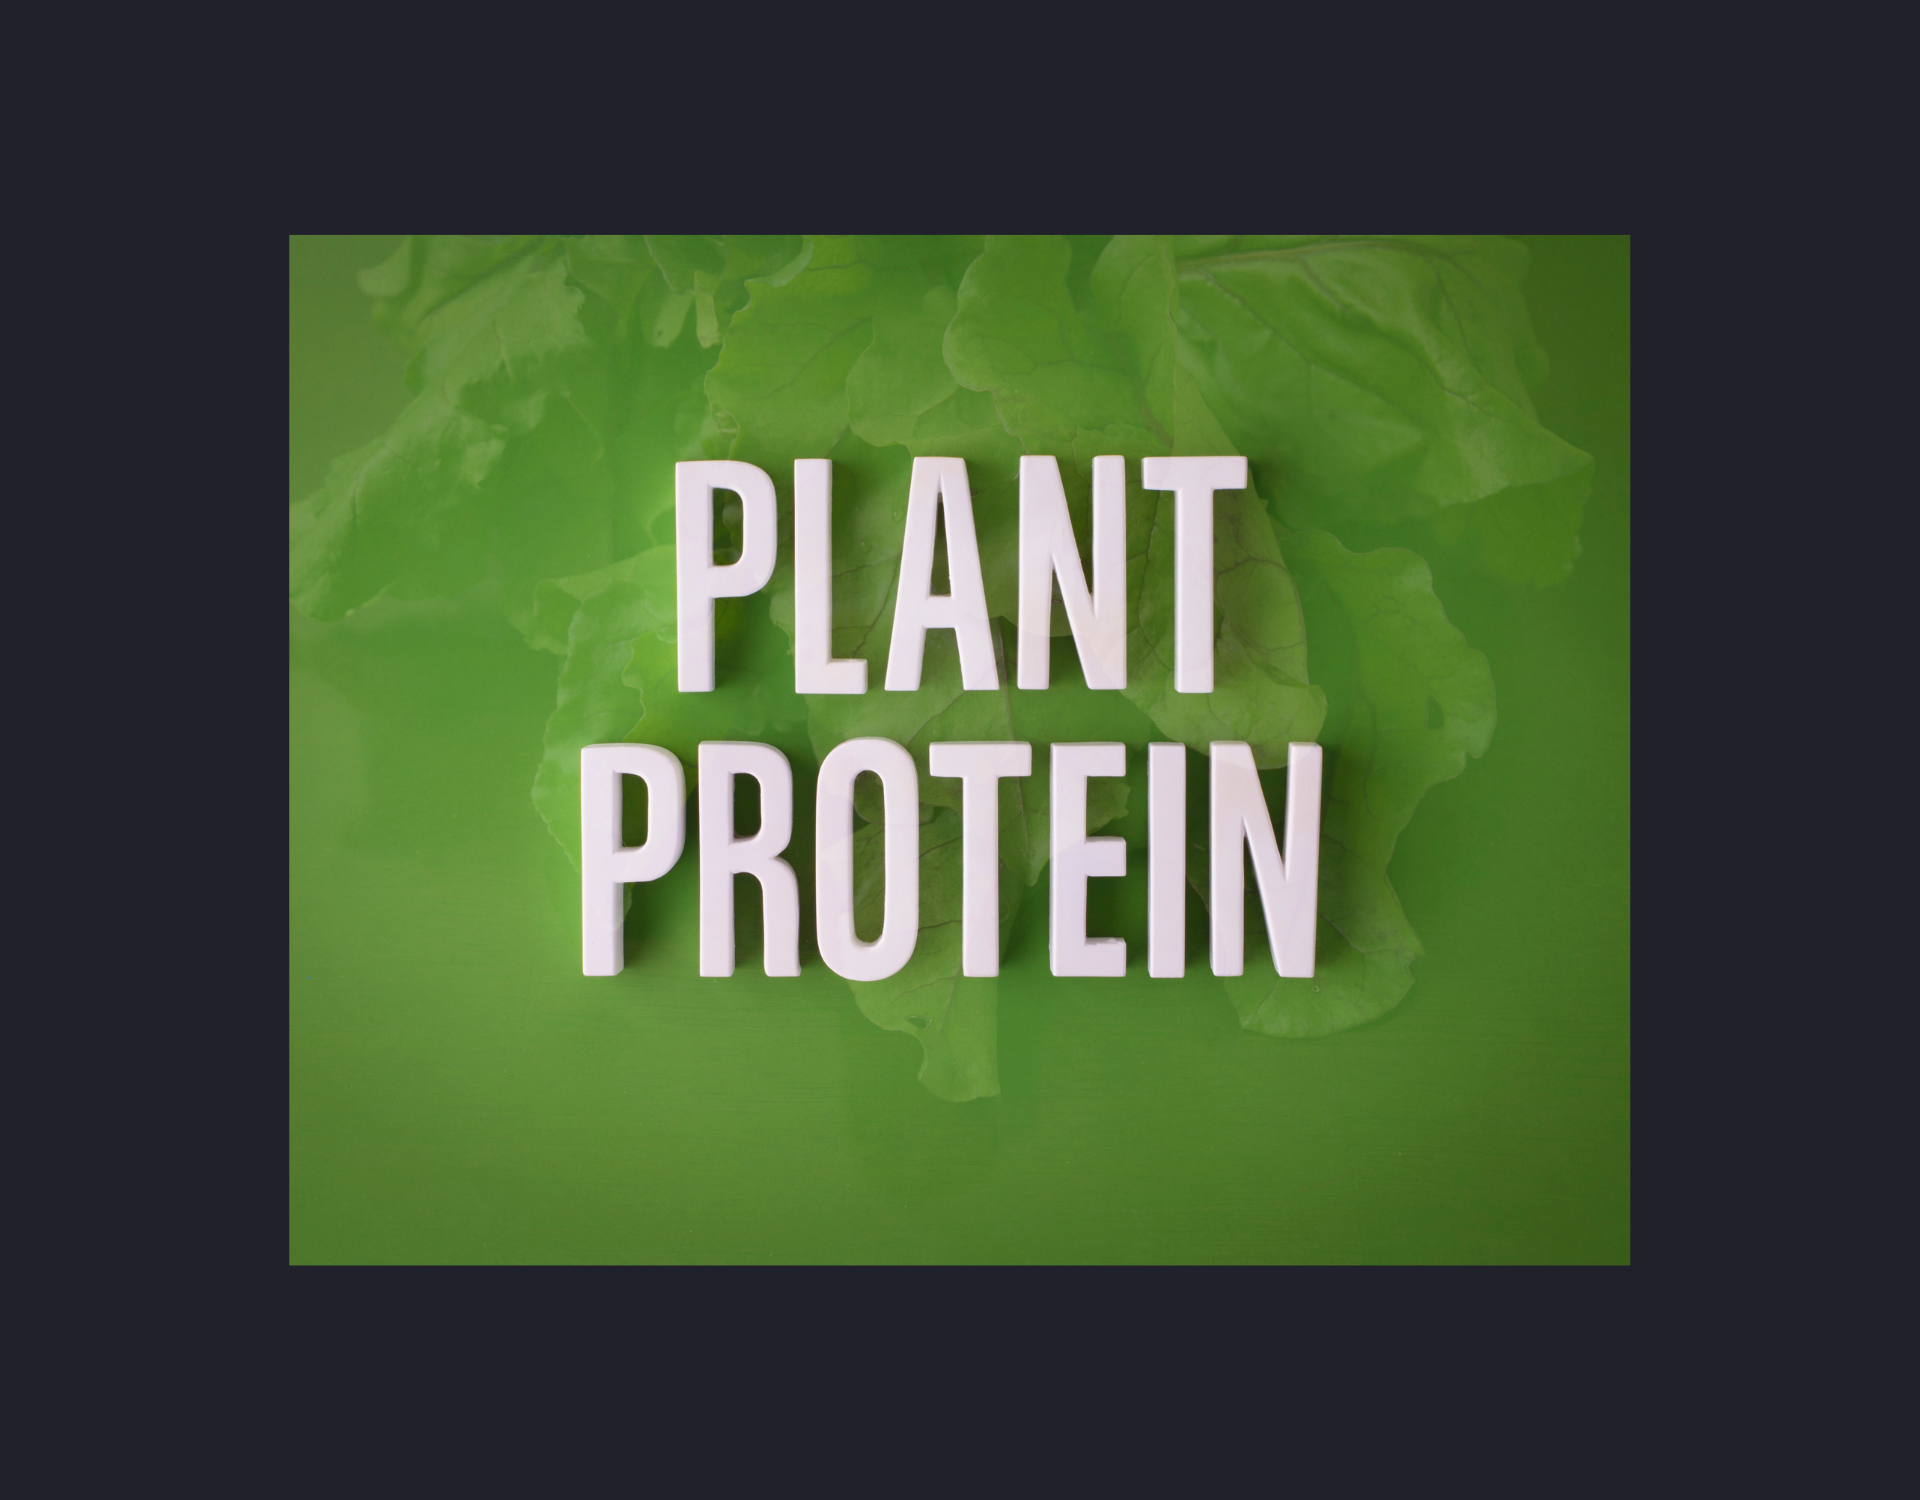 voordelen van plantaardige eiwitbronnen zoals eiwitshakes en voeding